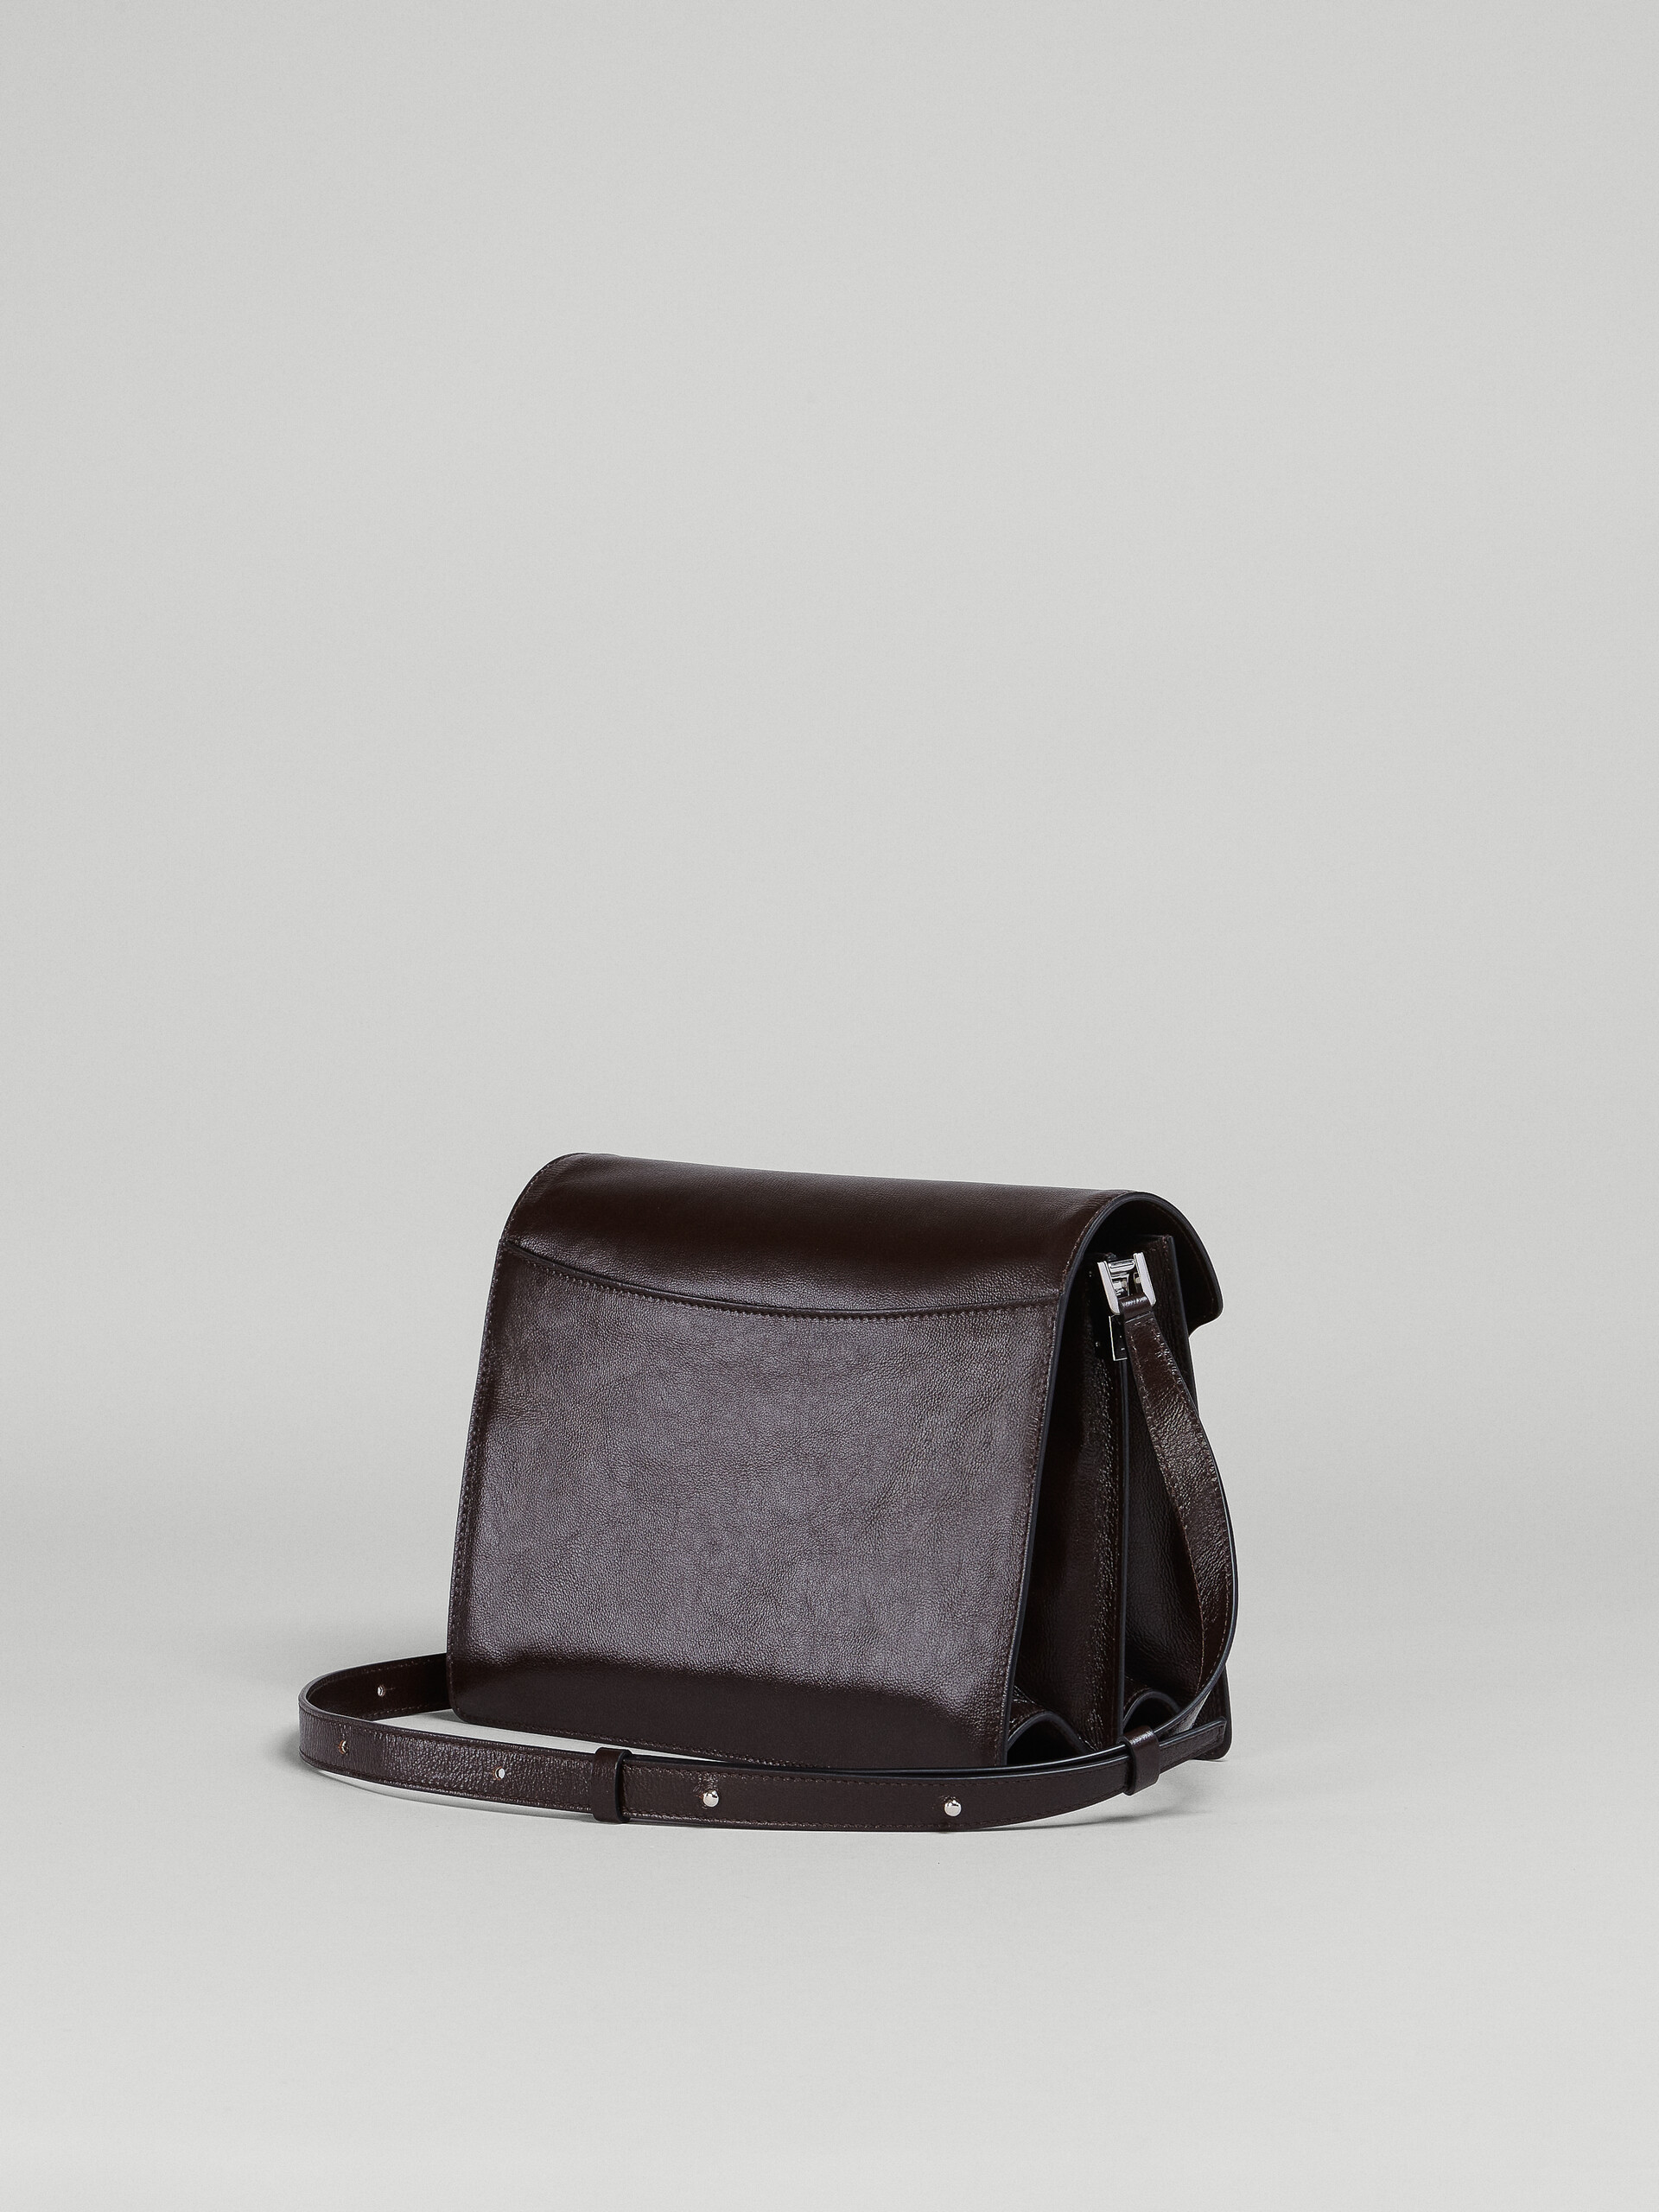 Trunk Soft Bag Grande in pelle nera - Borse a spalla - Image 2